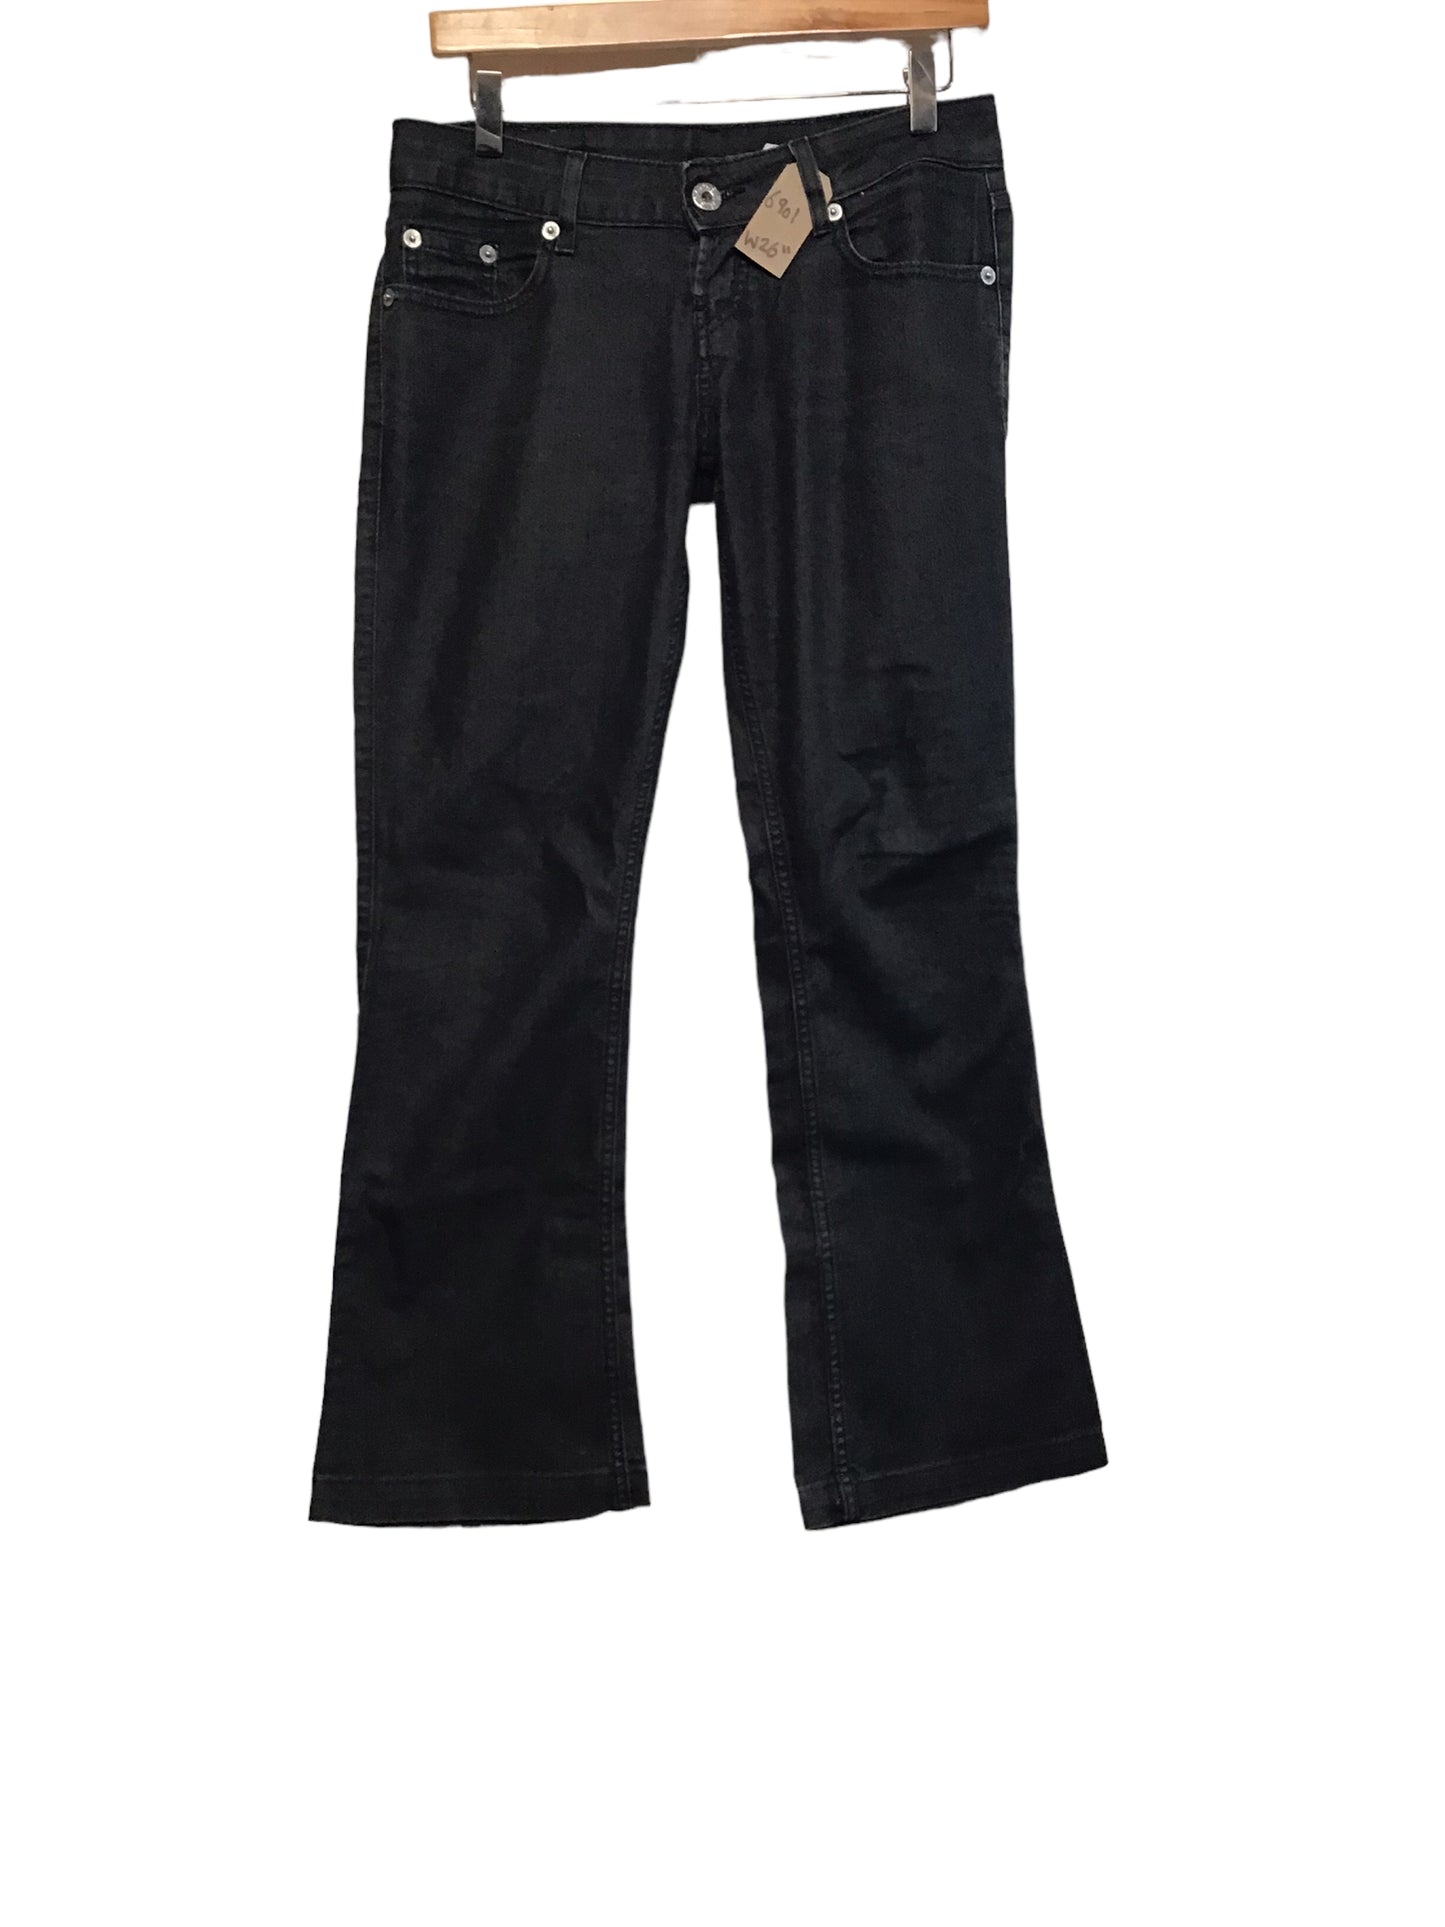 Levi 518 Jeans (26x32)